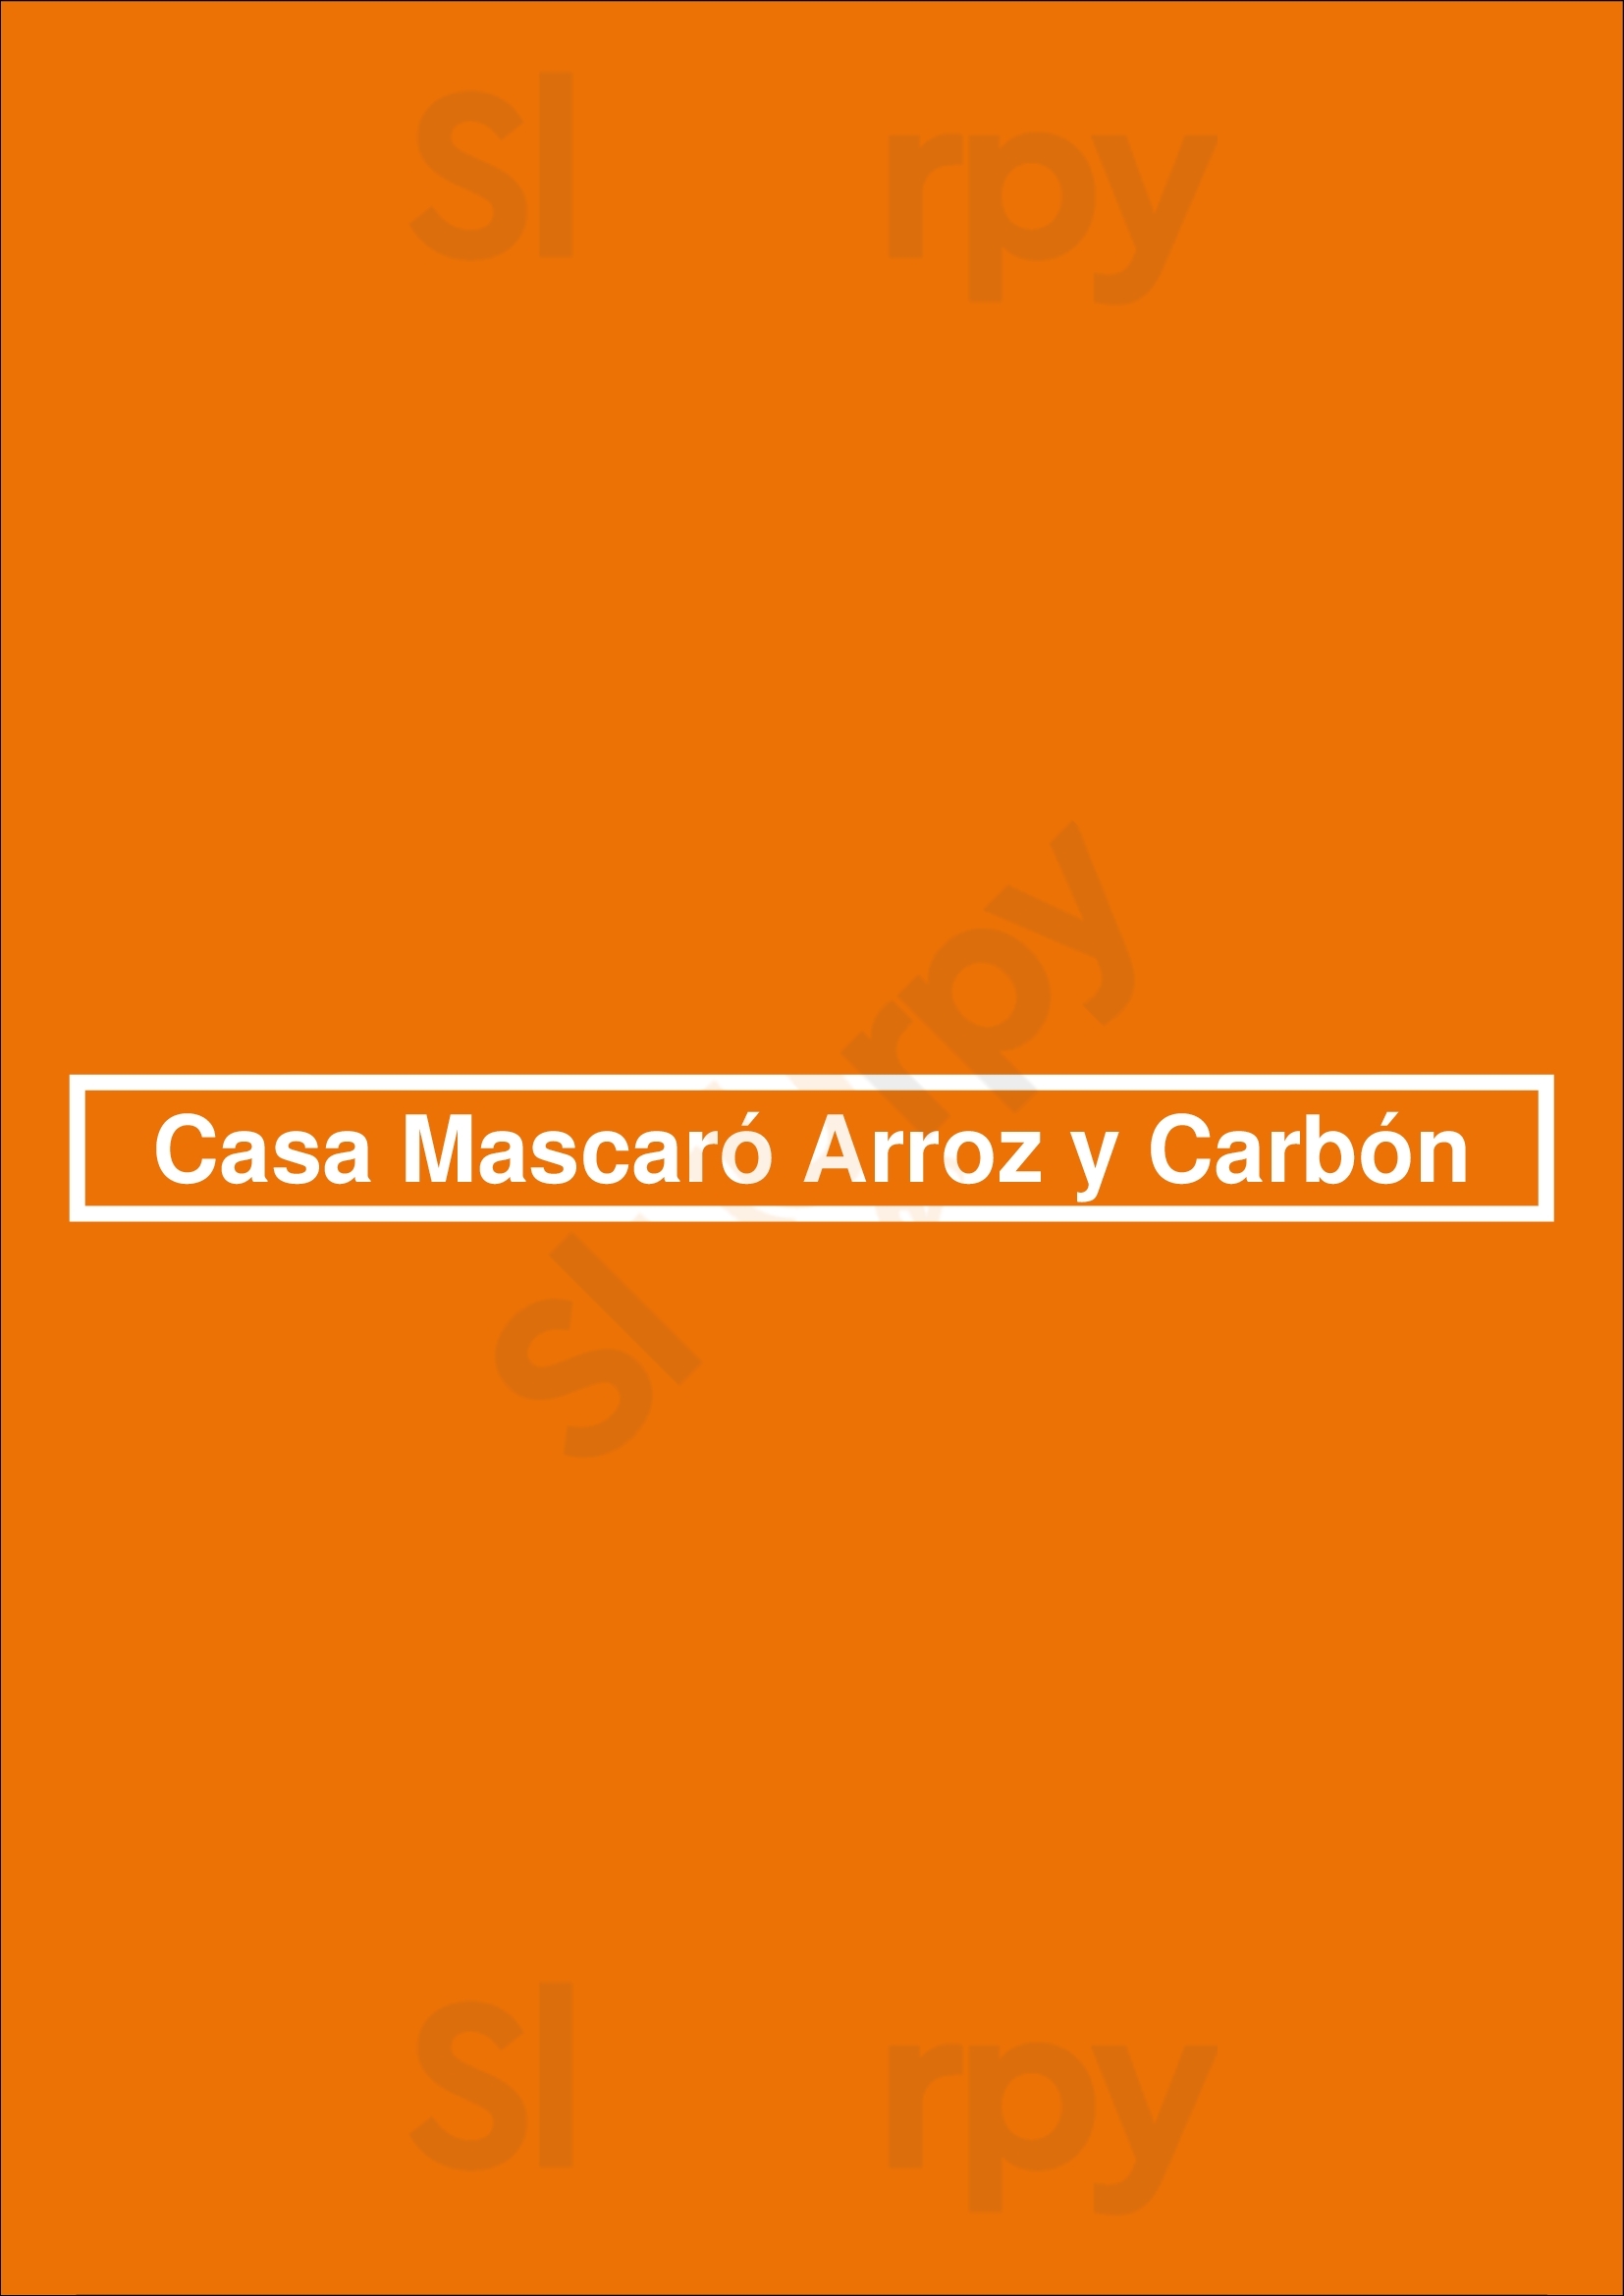 Casa Mascaró Arroz Y Carbón Madrid Menu - 1